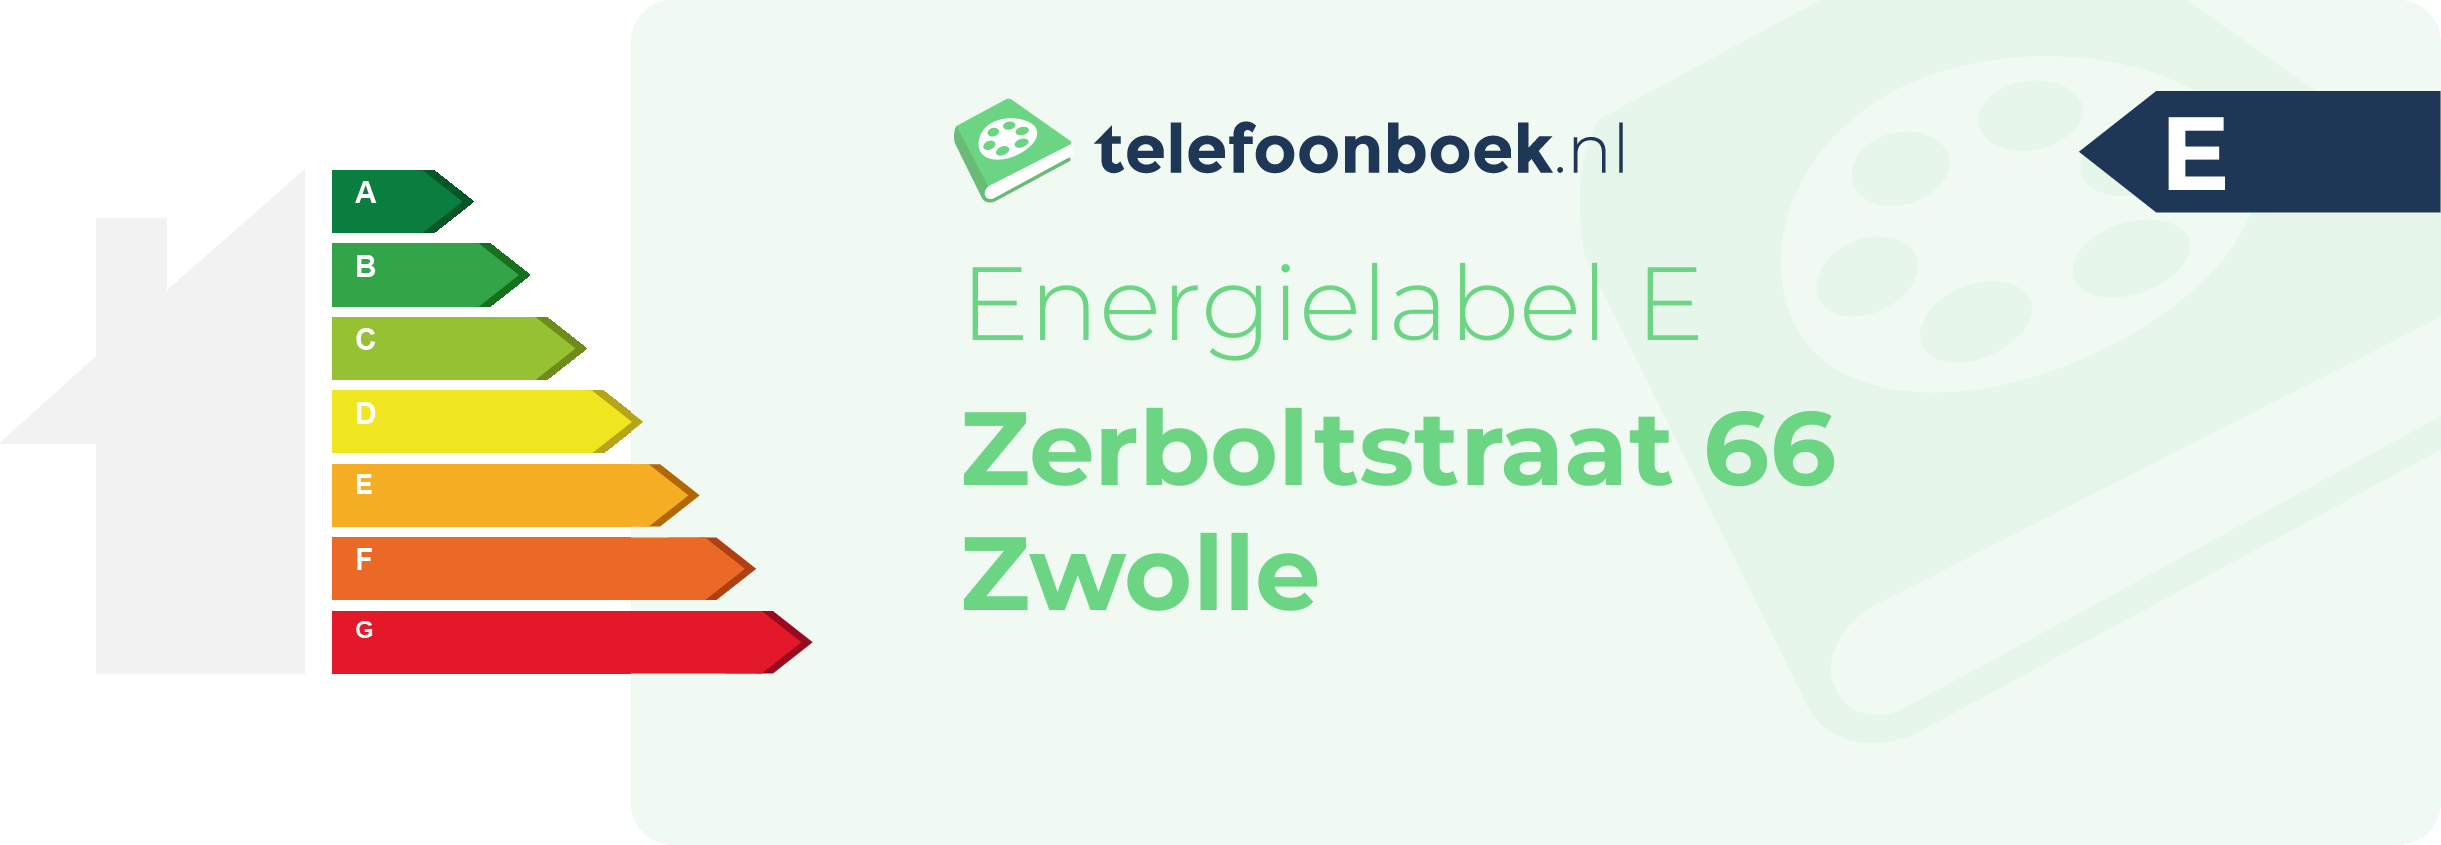 Energielabel Zerboltstraat 66 Zwolle